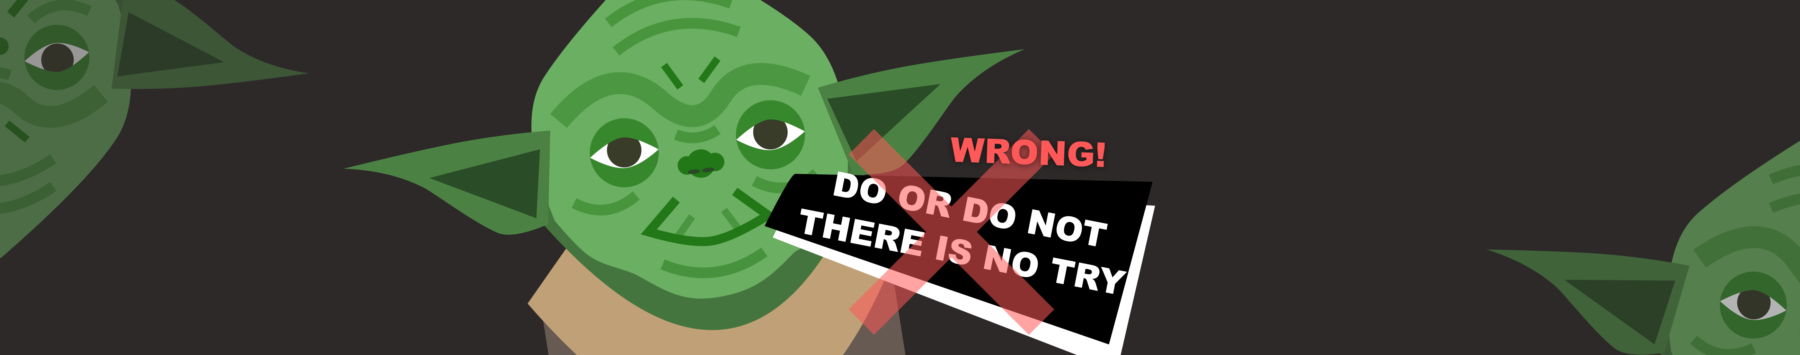 Miten Yoda voi opettaa prototyypin luomisen tärkeydestä